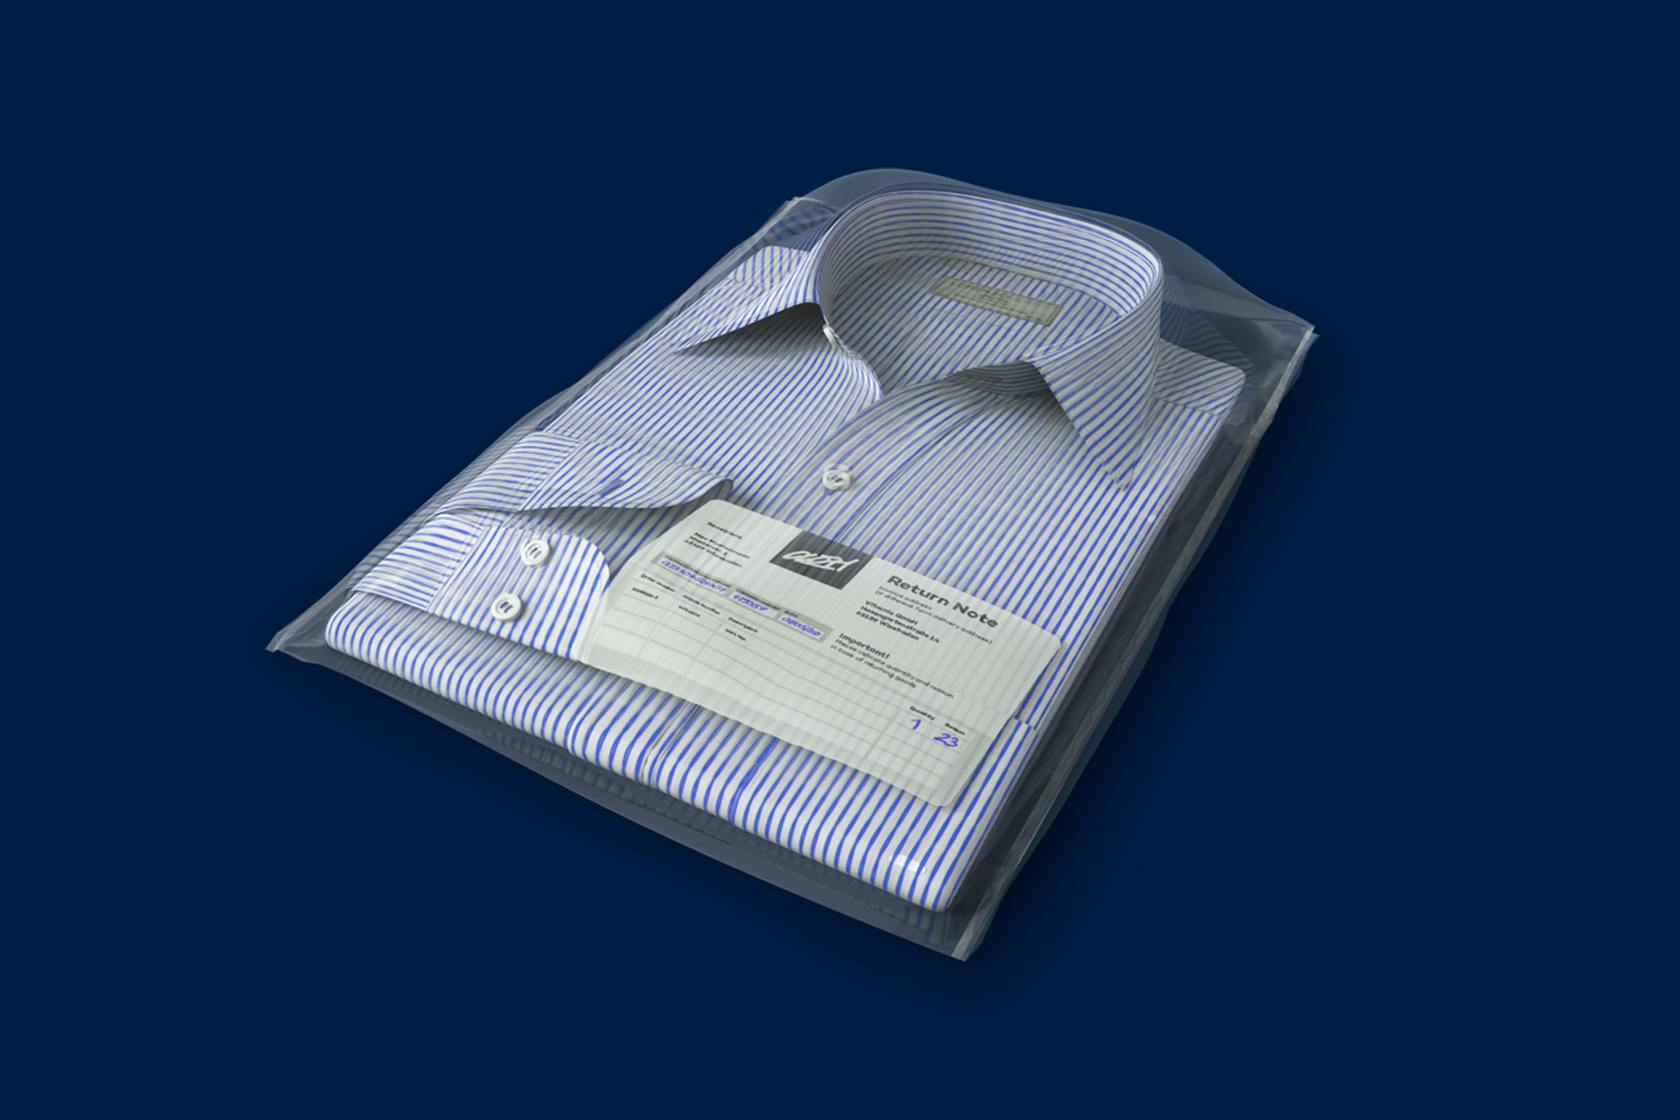 Una camisa como devolución: Gestión automatizada de las devoluciones con registro de los códigos de barras y el motivo de la devolución.